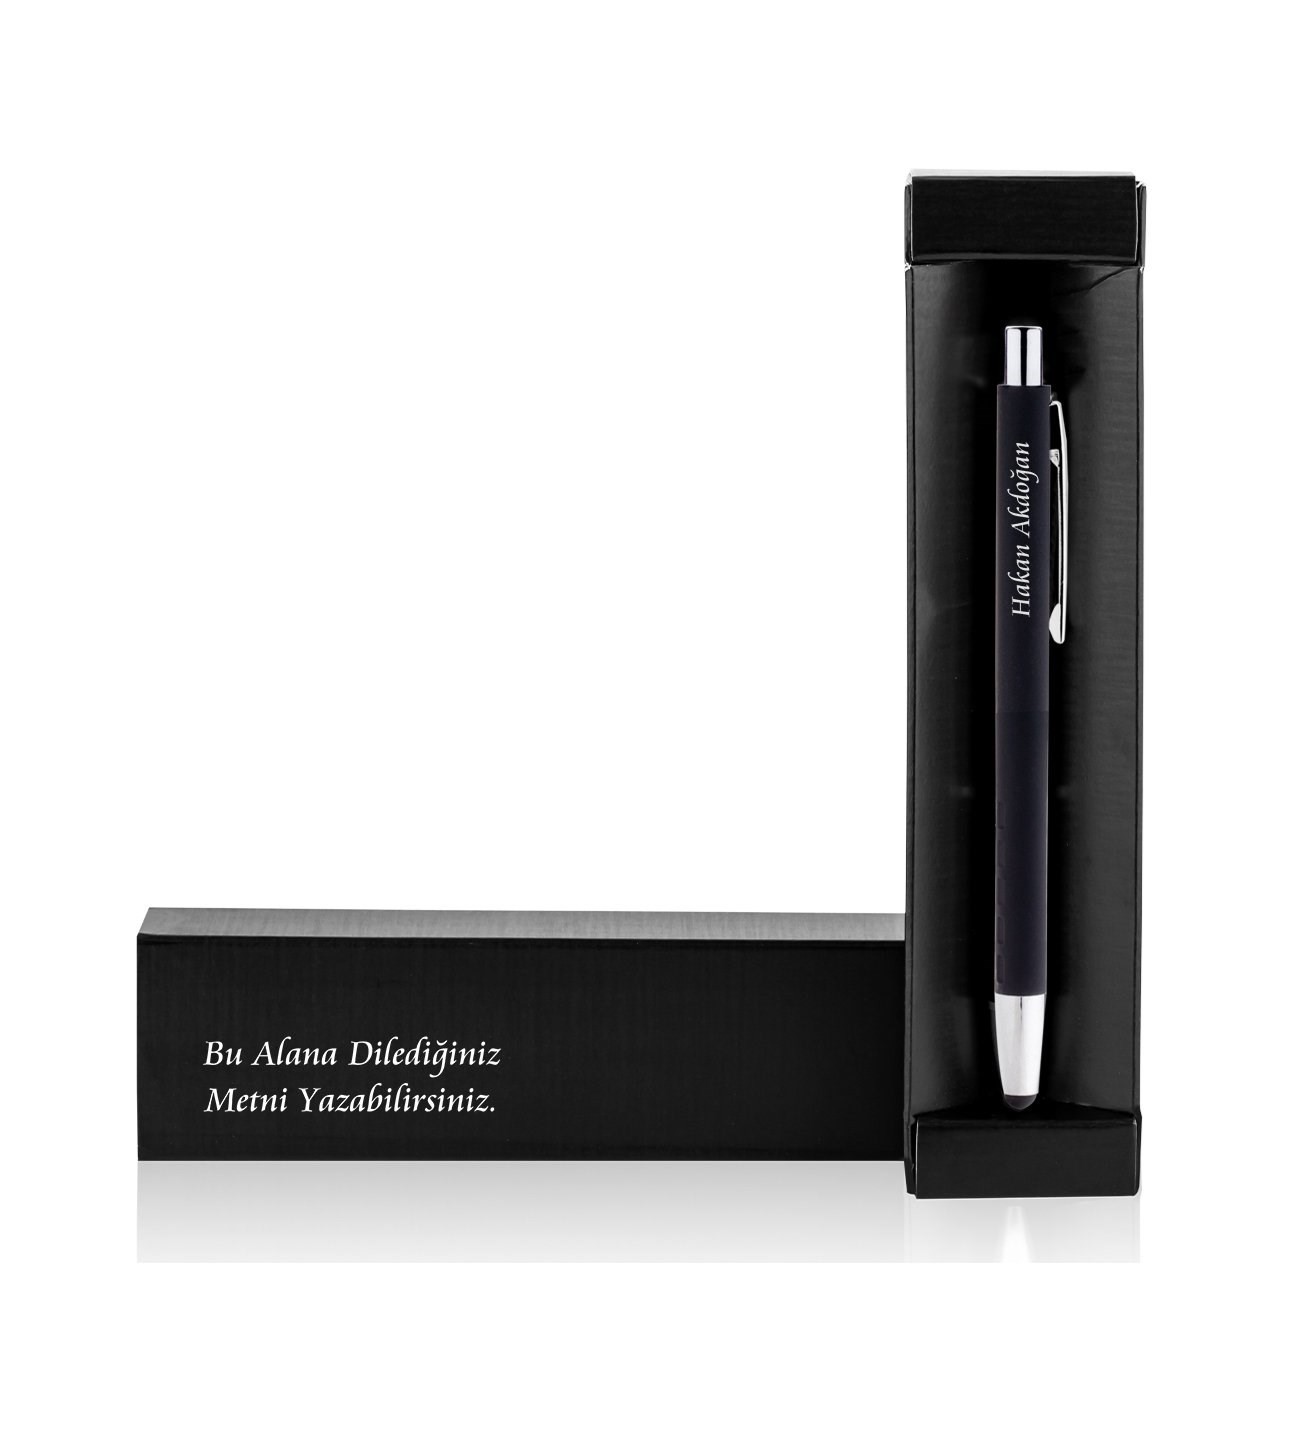 Kişiye Özel Touch Pen Özellikli Mesajlı Kutu ve Metal Kalem yp4655 kc1893050